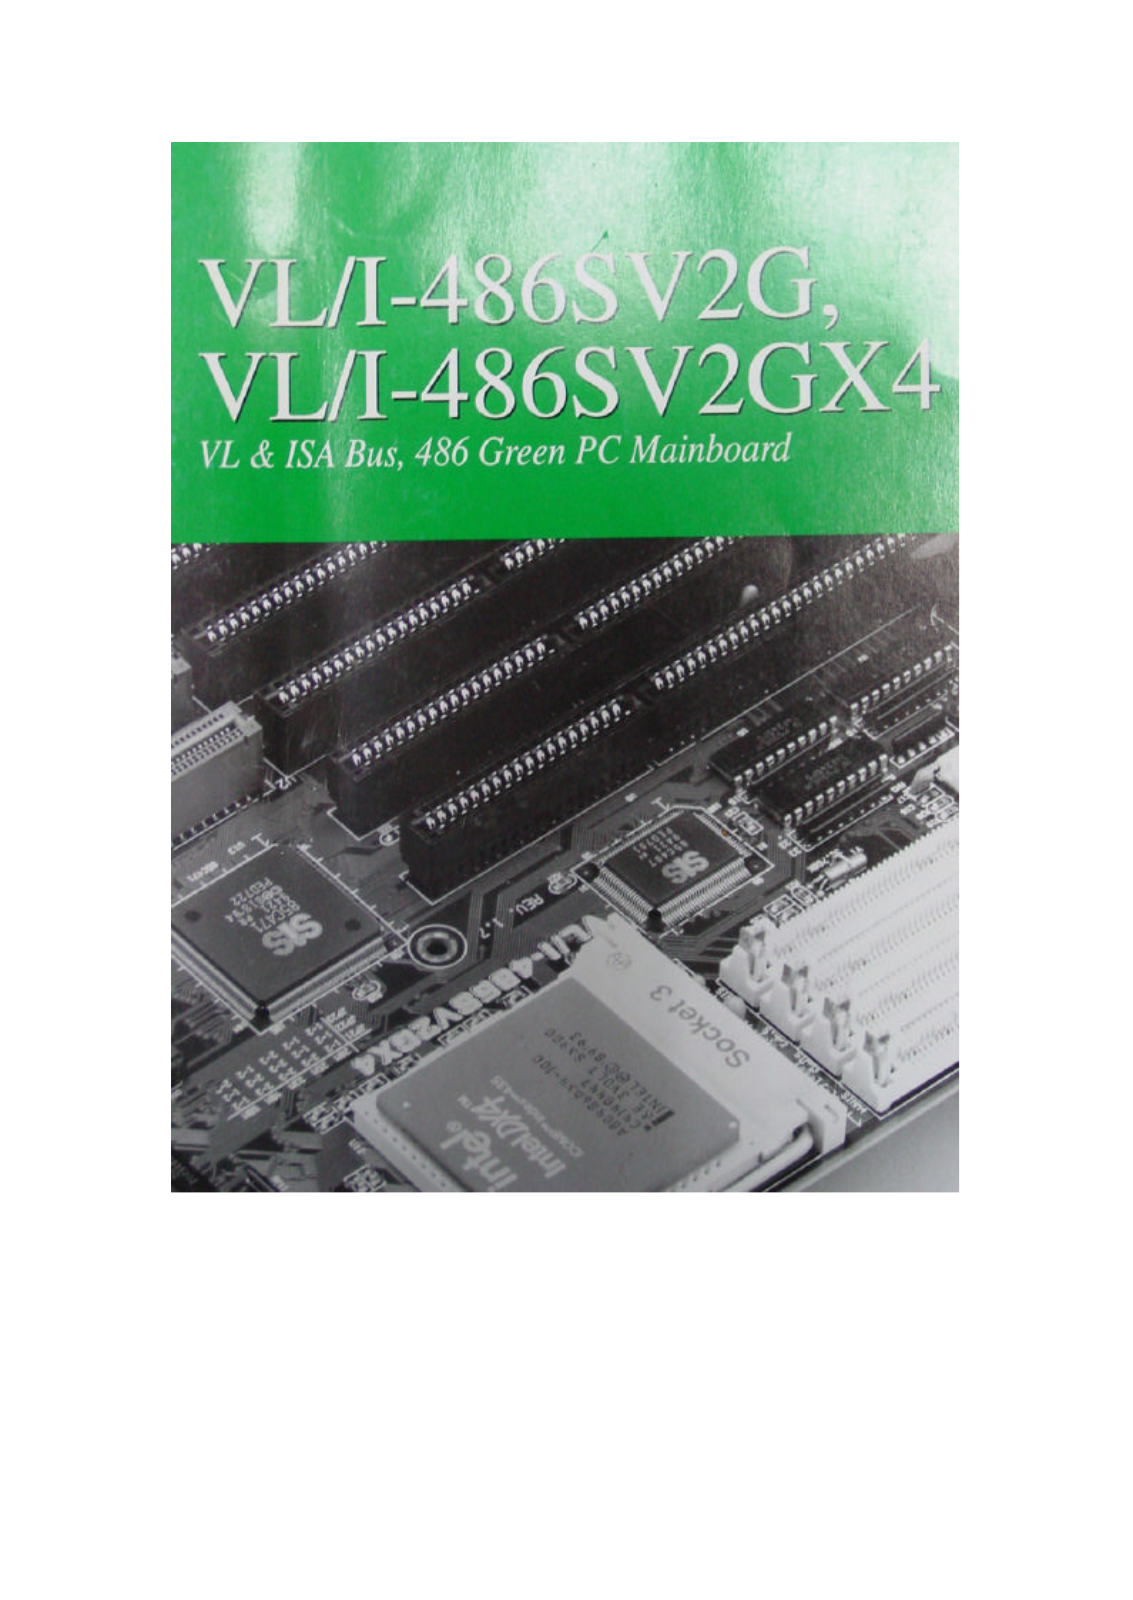 ASUS VLI-486SV2G User Manual